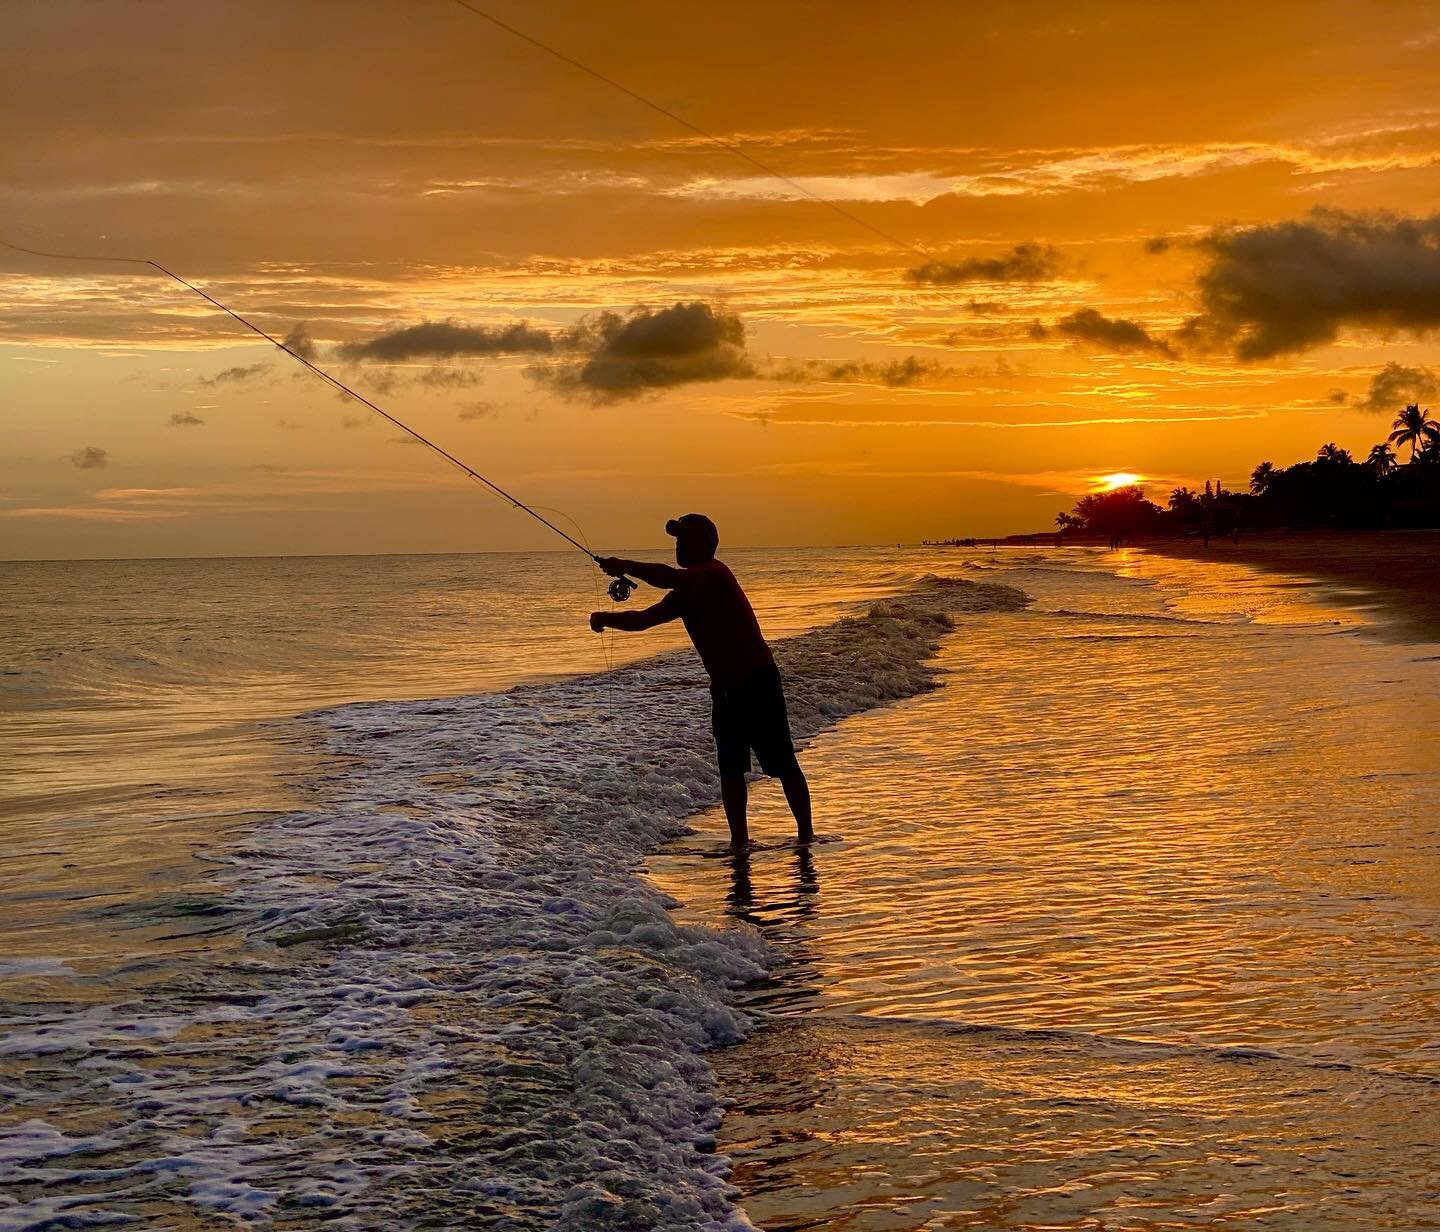 My favorite shot from #sanibelislandflorida - fly fishing at sunset! Working on a #flyfishing #magazinearticle this week in lovely @visitsanibel @visit_sanibel .
.
#travel #travelwriting #saltwaterflyfishing #flyfishingaddict #fishing #snook #travelw